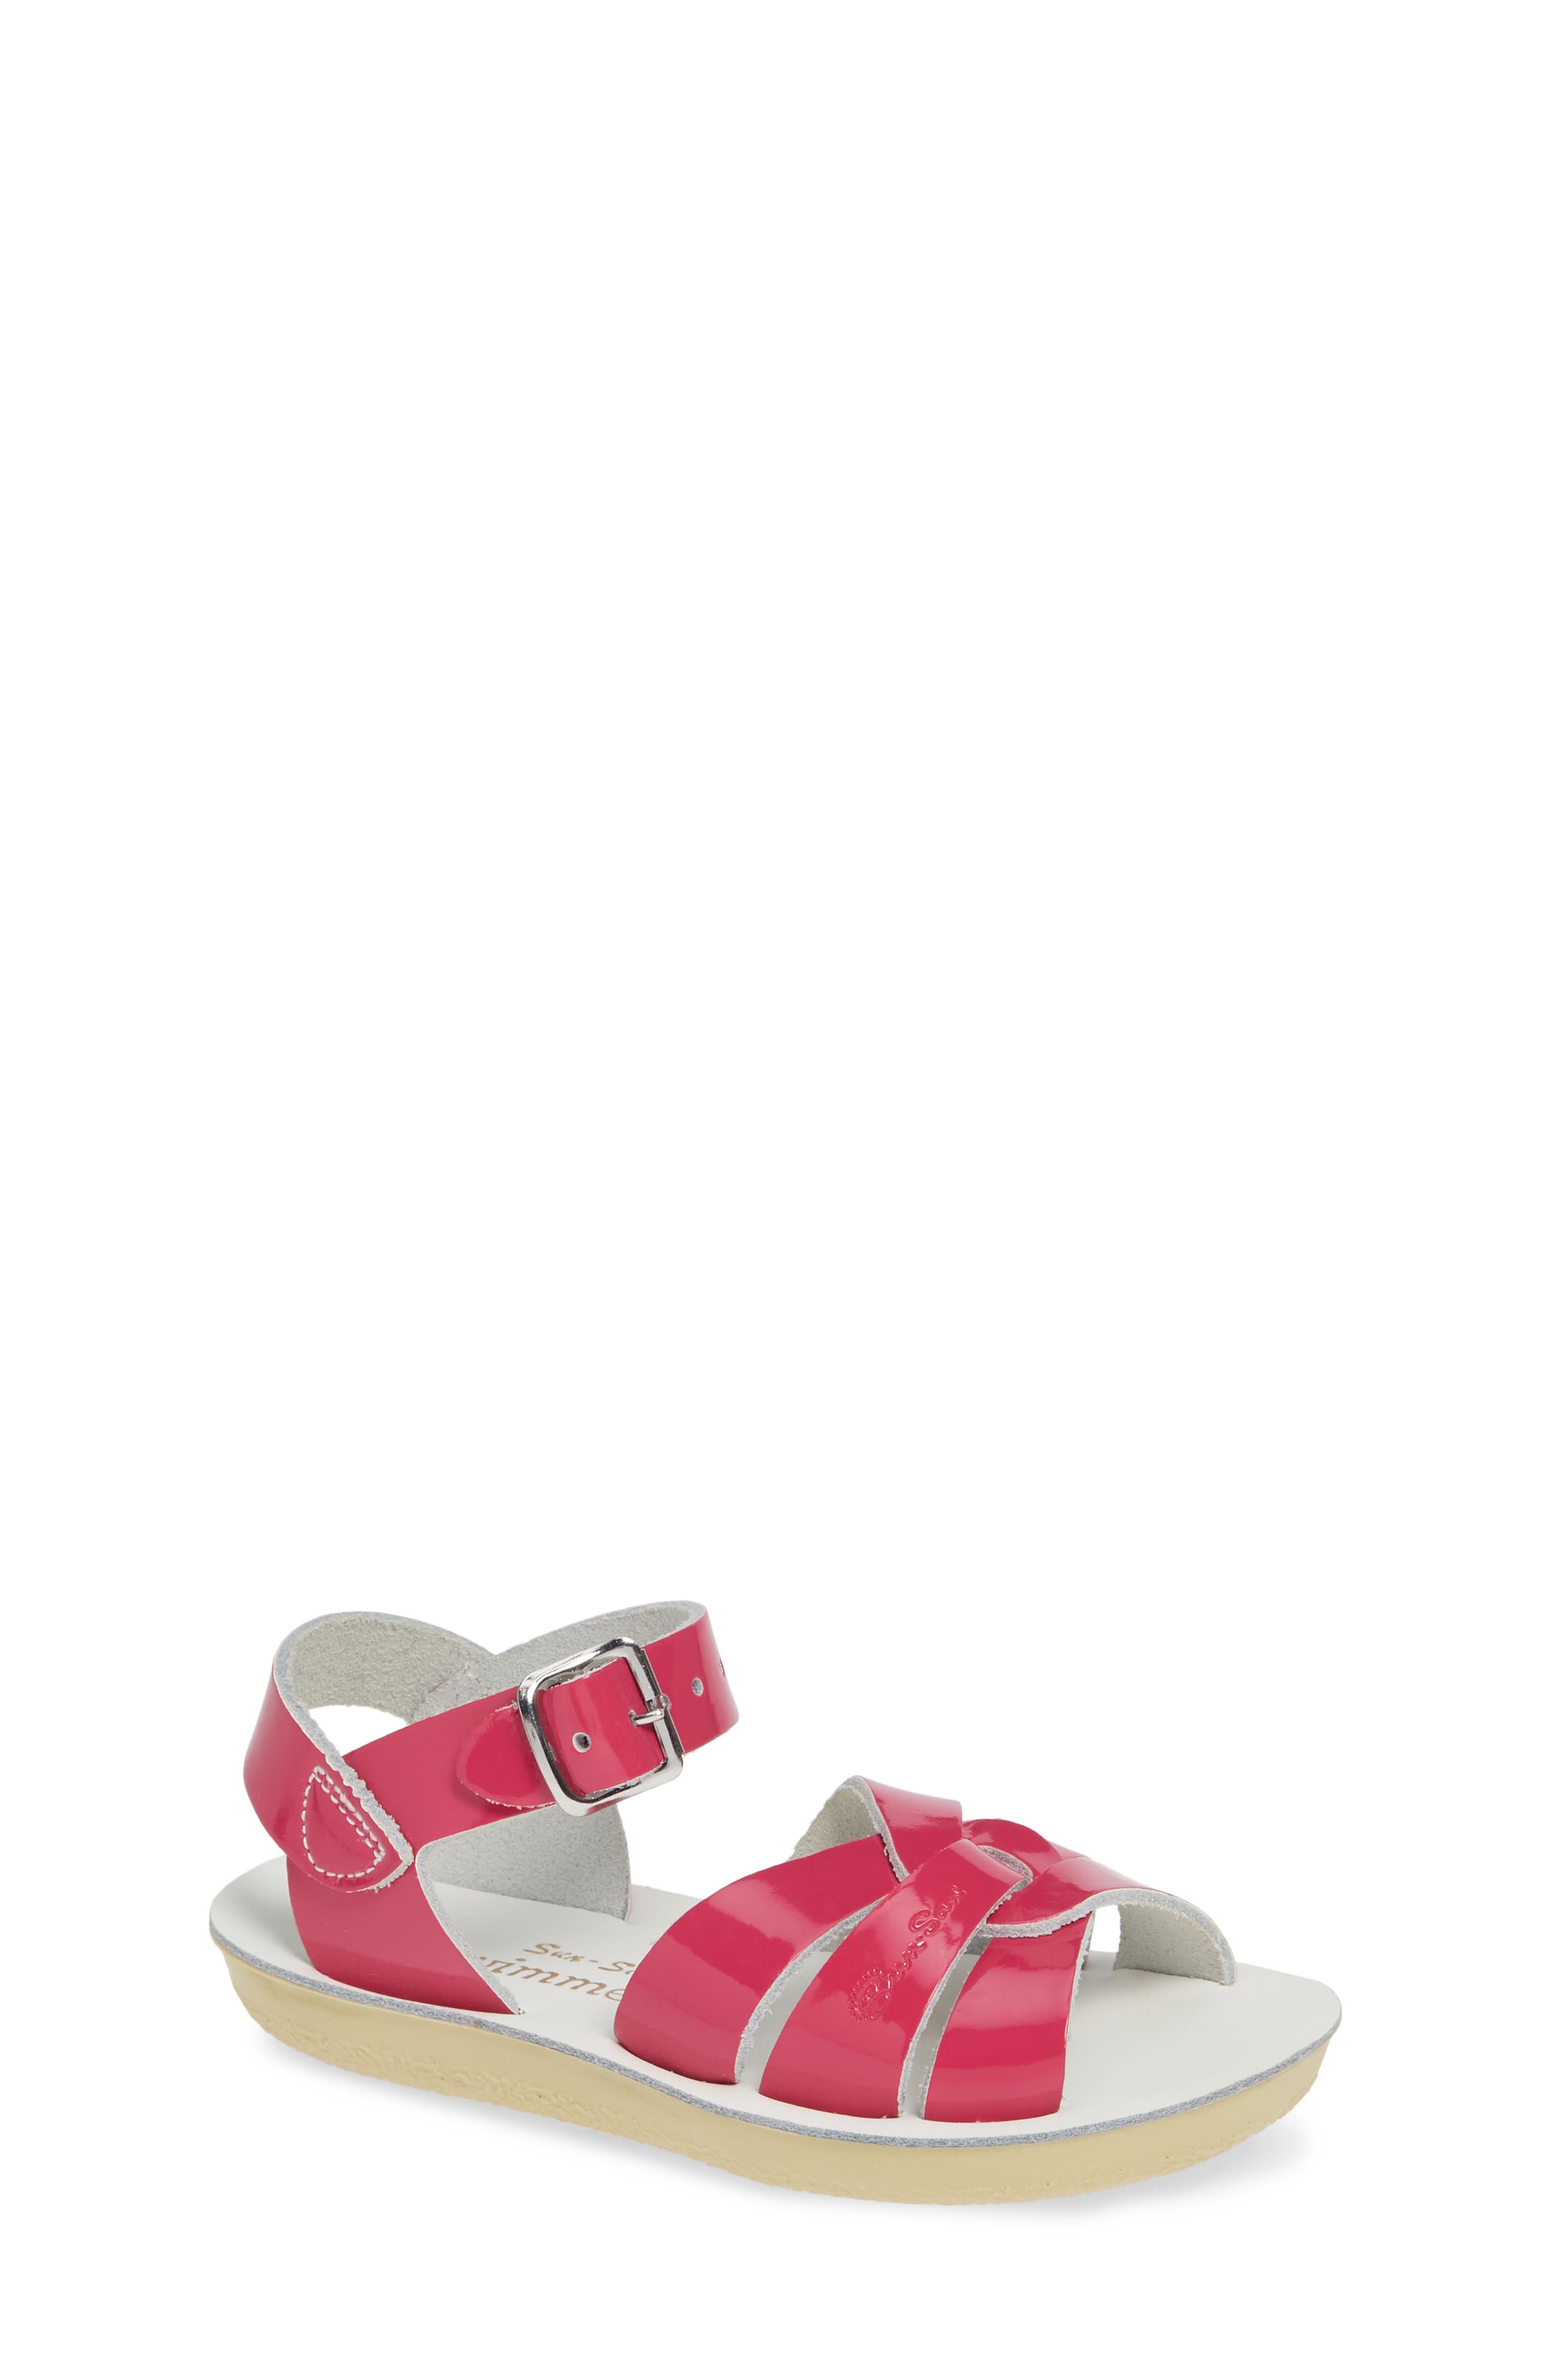 Salt Water Sandals 1788-PINK by Hoy Shoe Surfer Shiny Pink Sandal